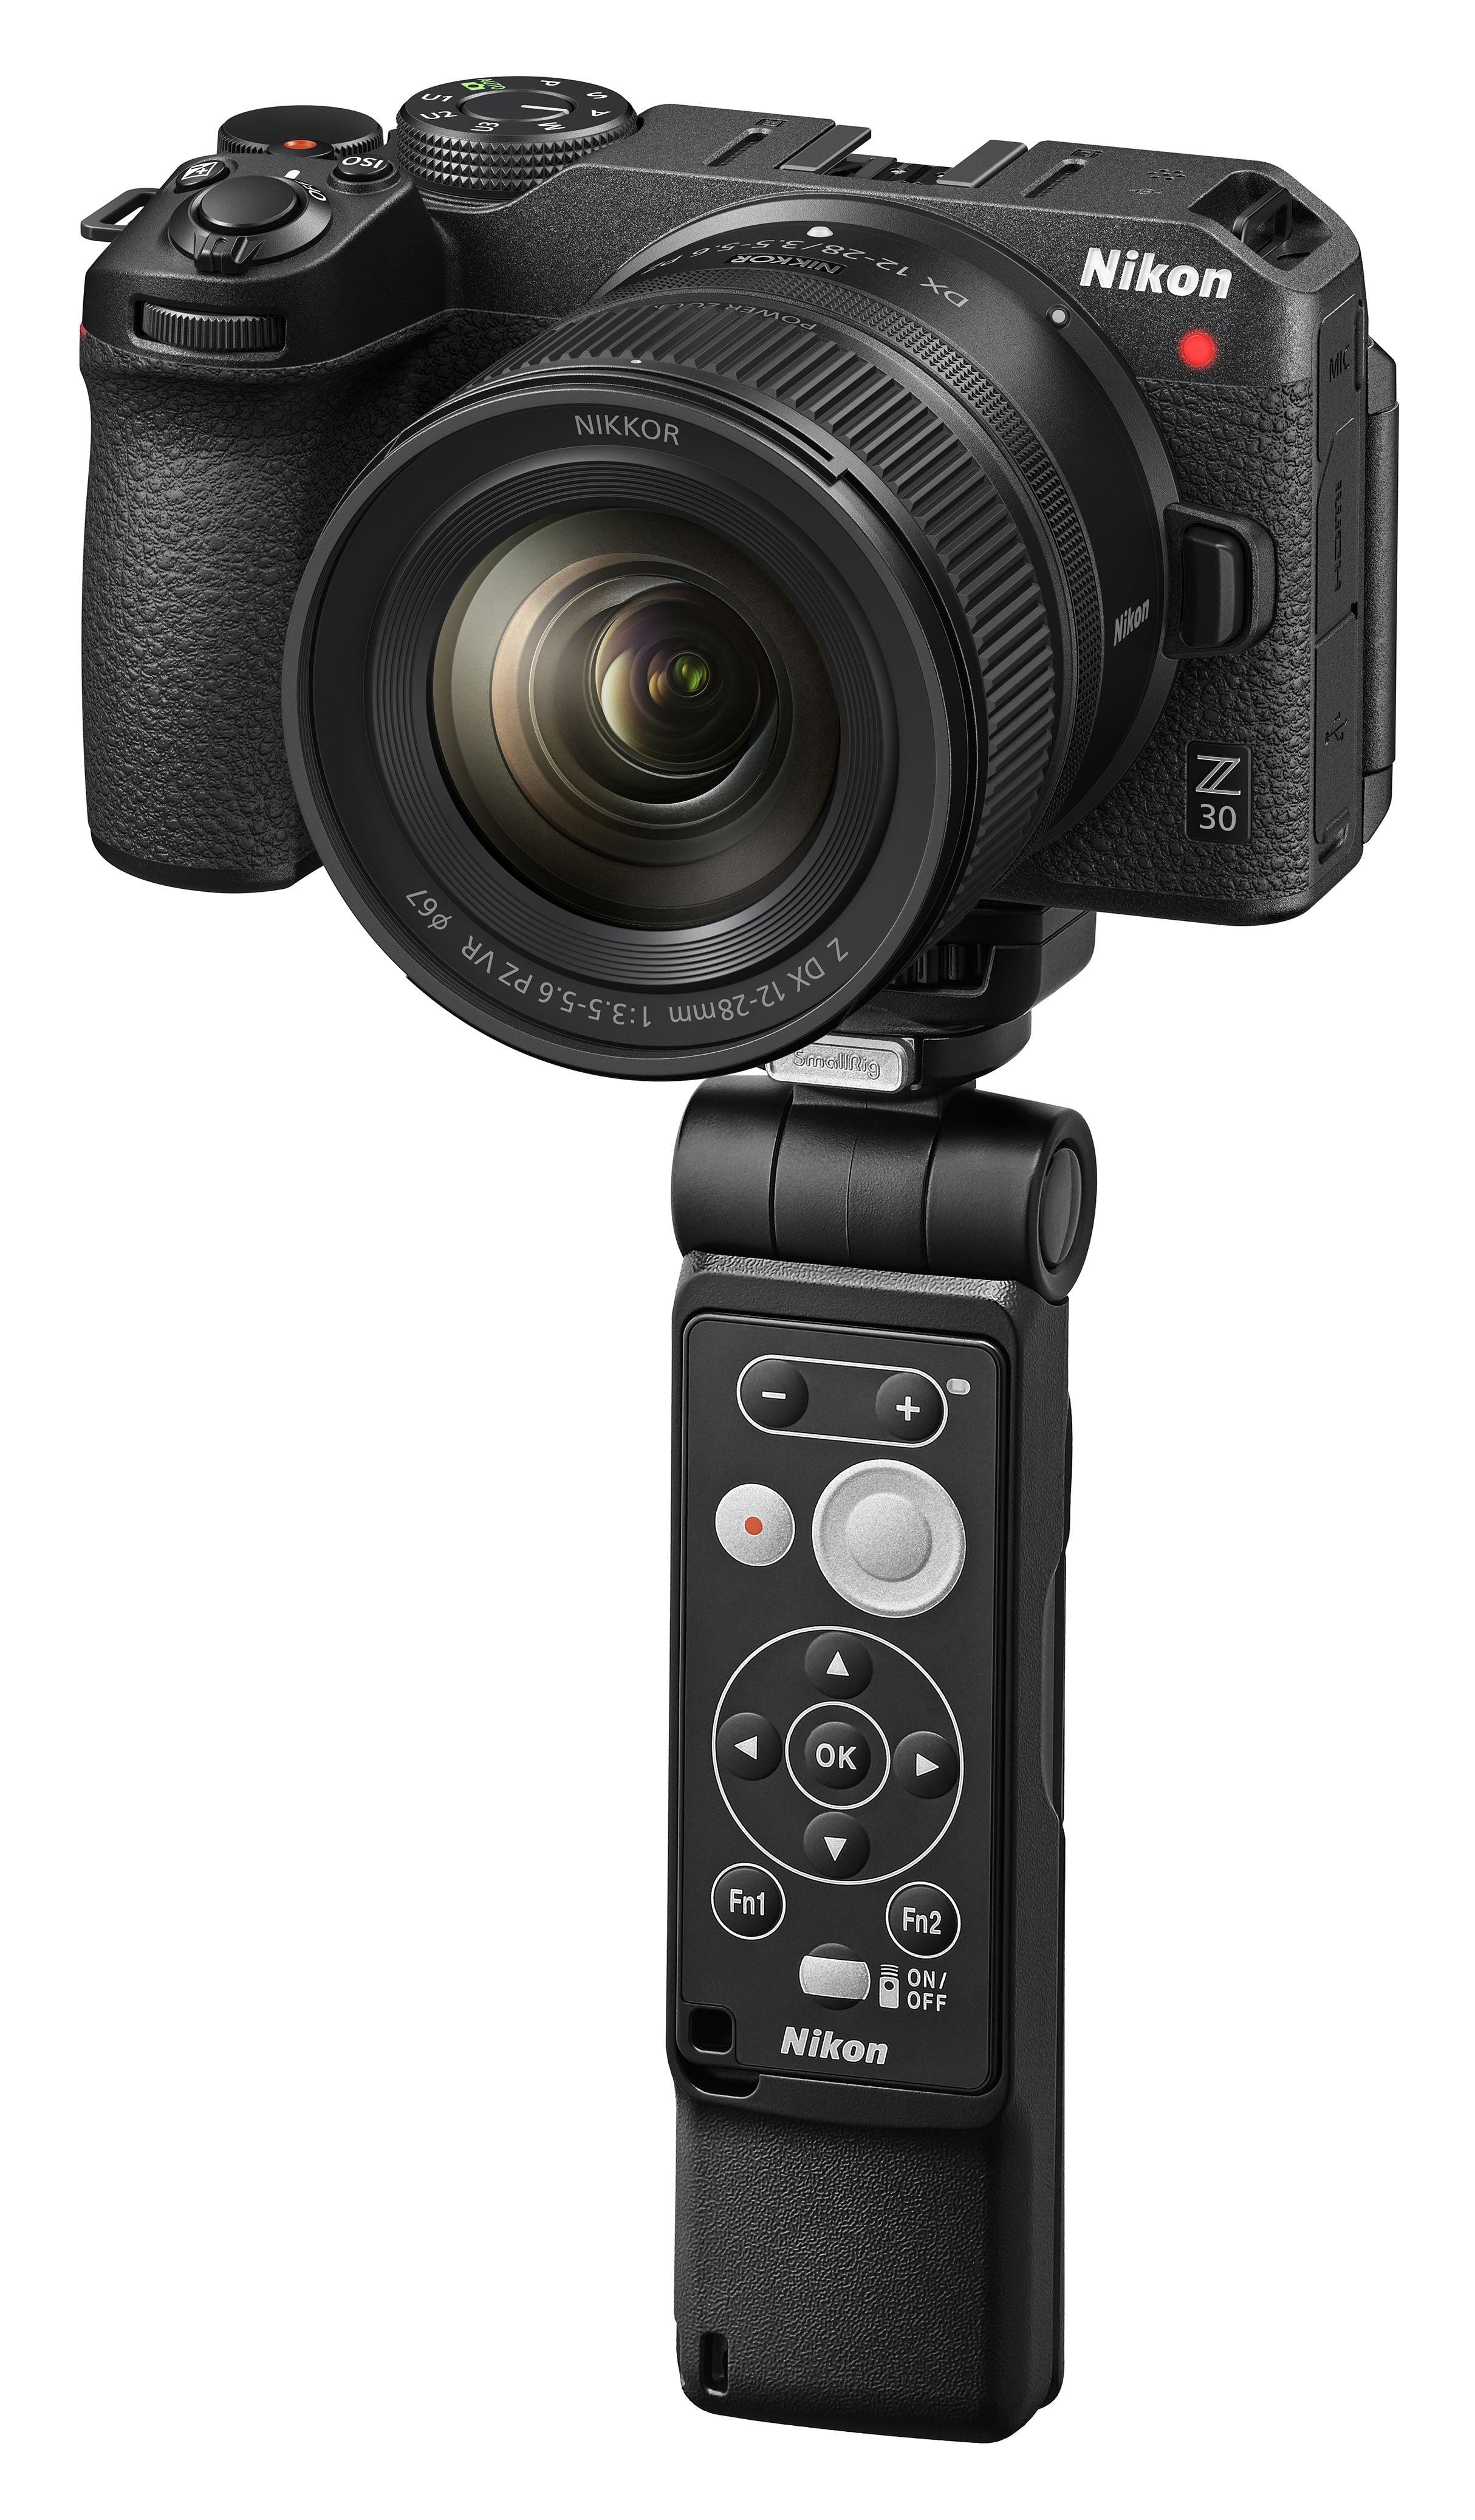 Nikon Z DX 12-28mm F3.5-5.6 PZ VR - Garanzia Nital 4 anni - Cine Sud è da 47 anni sul mercato! NMDX06